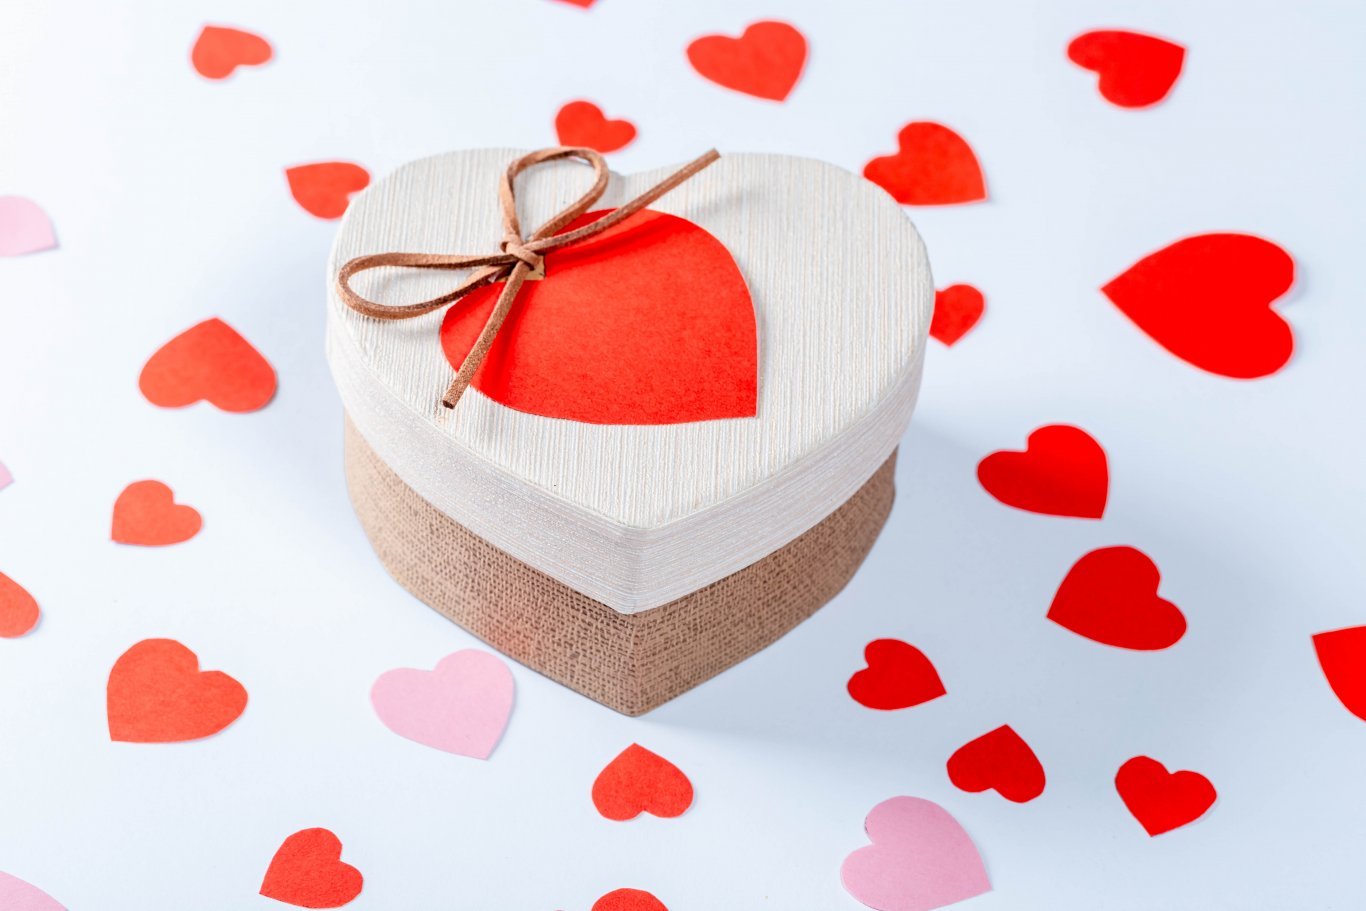 Geschenk zu Valentinstag in Herzform umgeben von vielen Herzen auf weißem Hintergrund